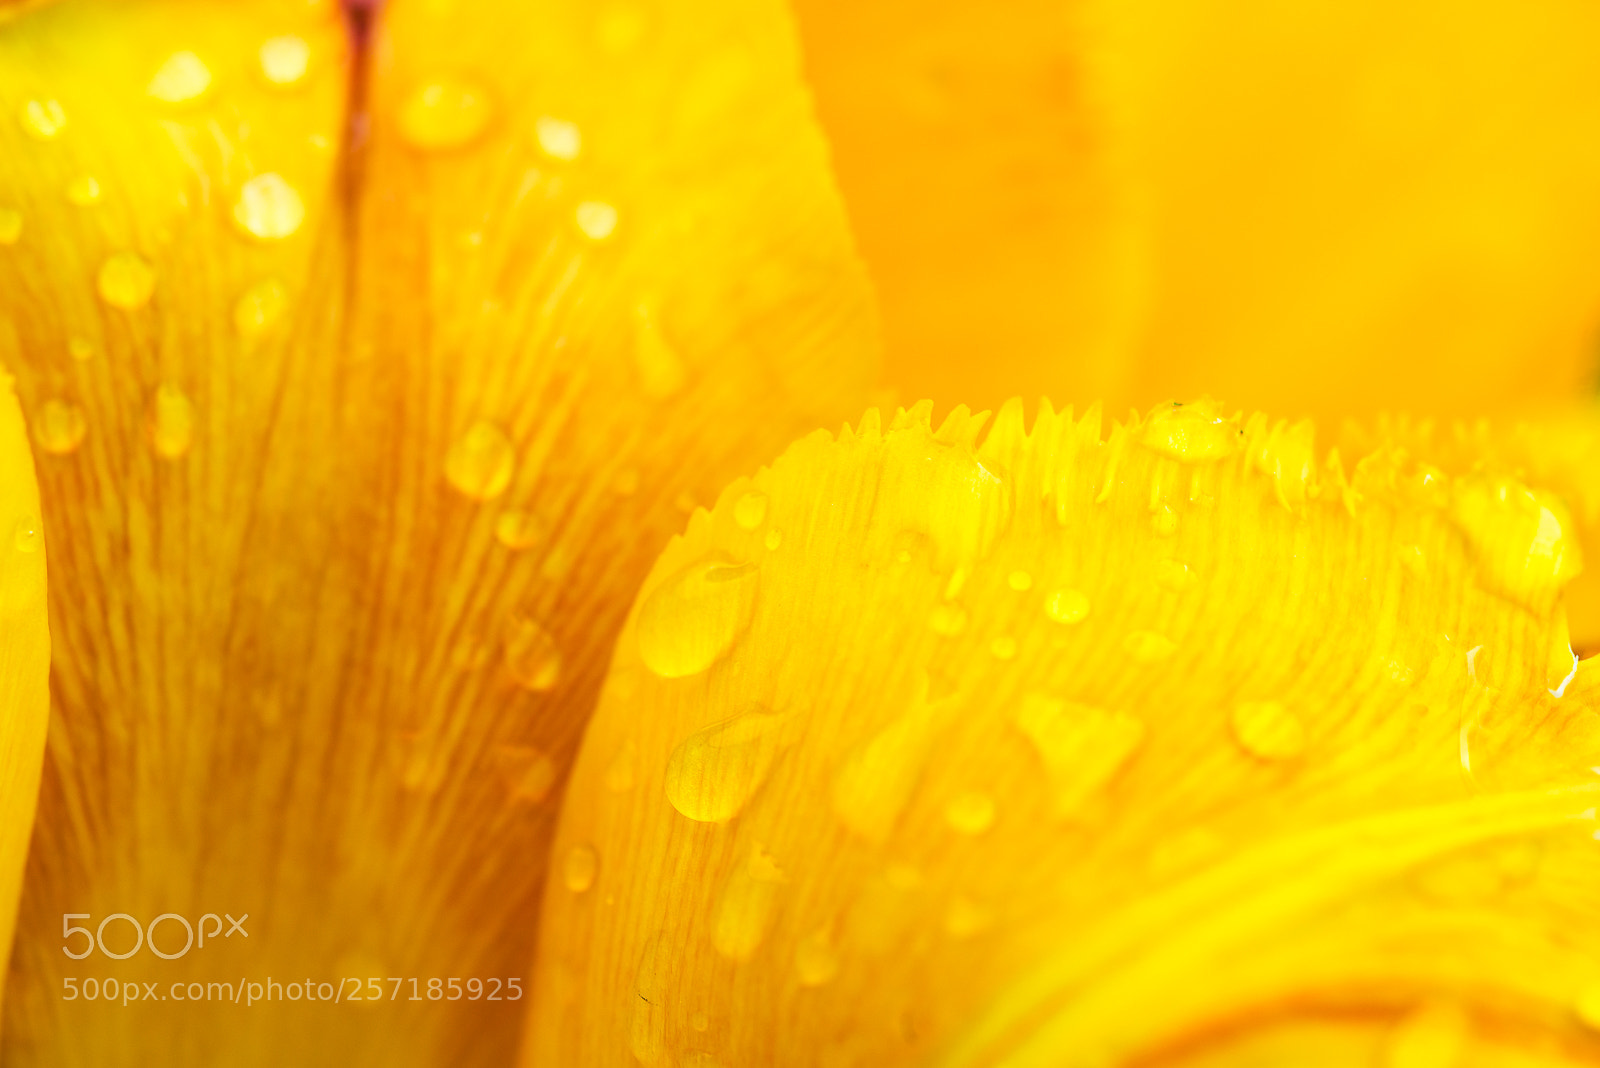 Nikon D800E sample photo. Petals of a yellow photography